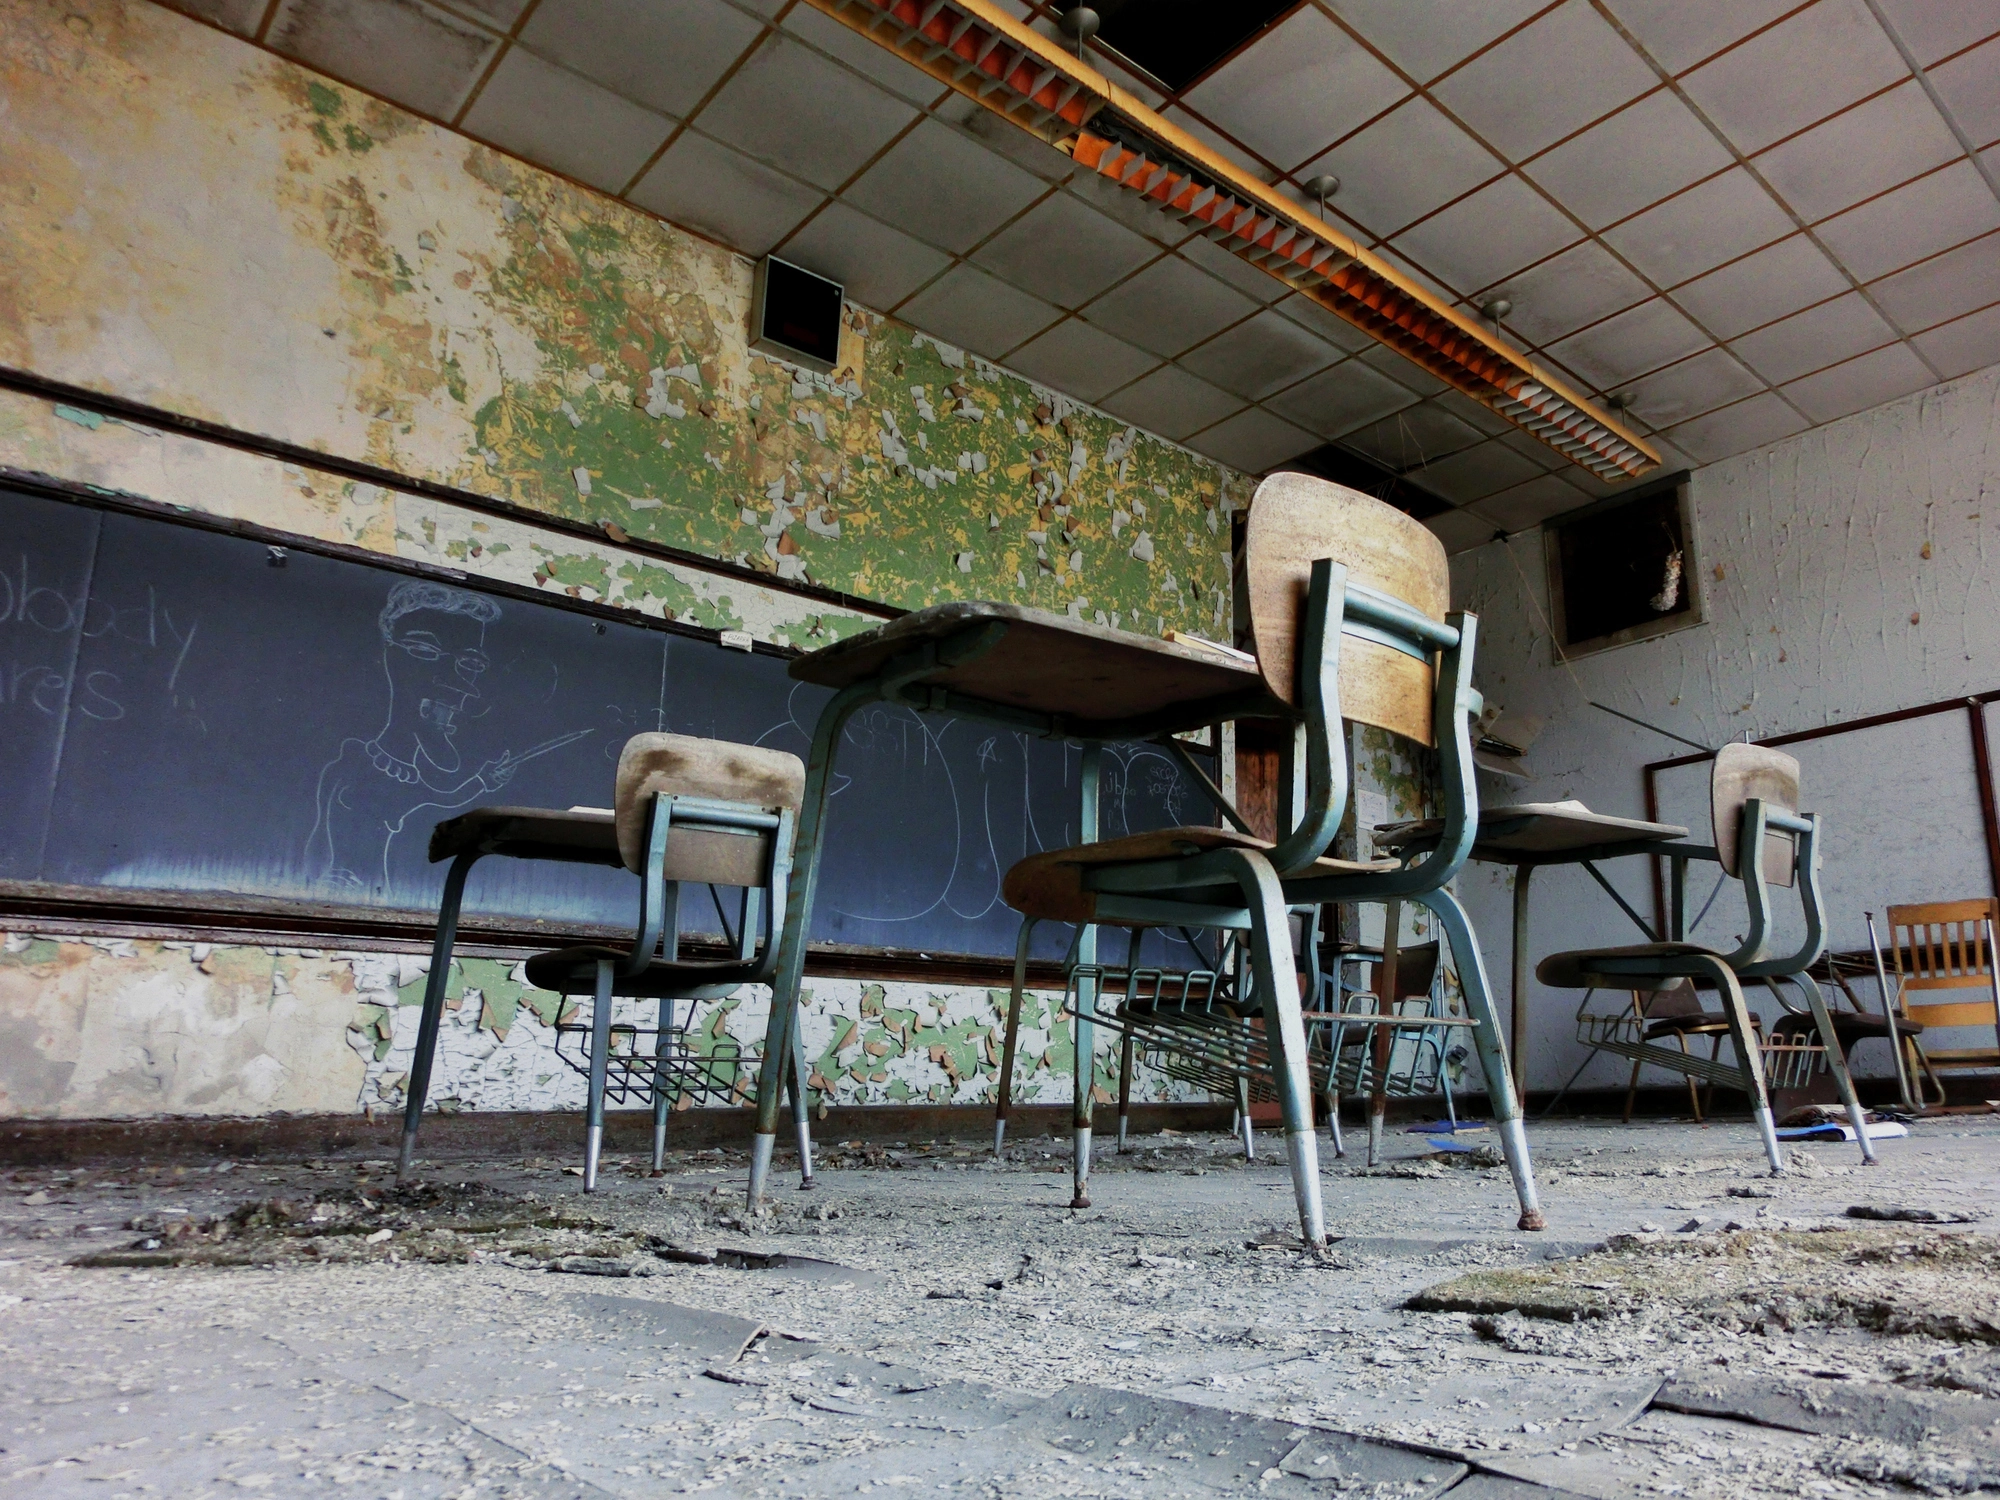 Crumbling schools